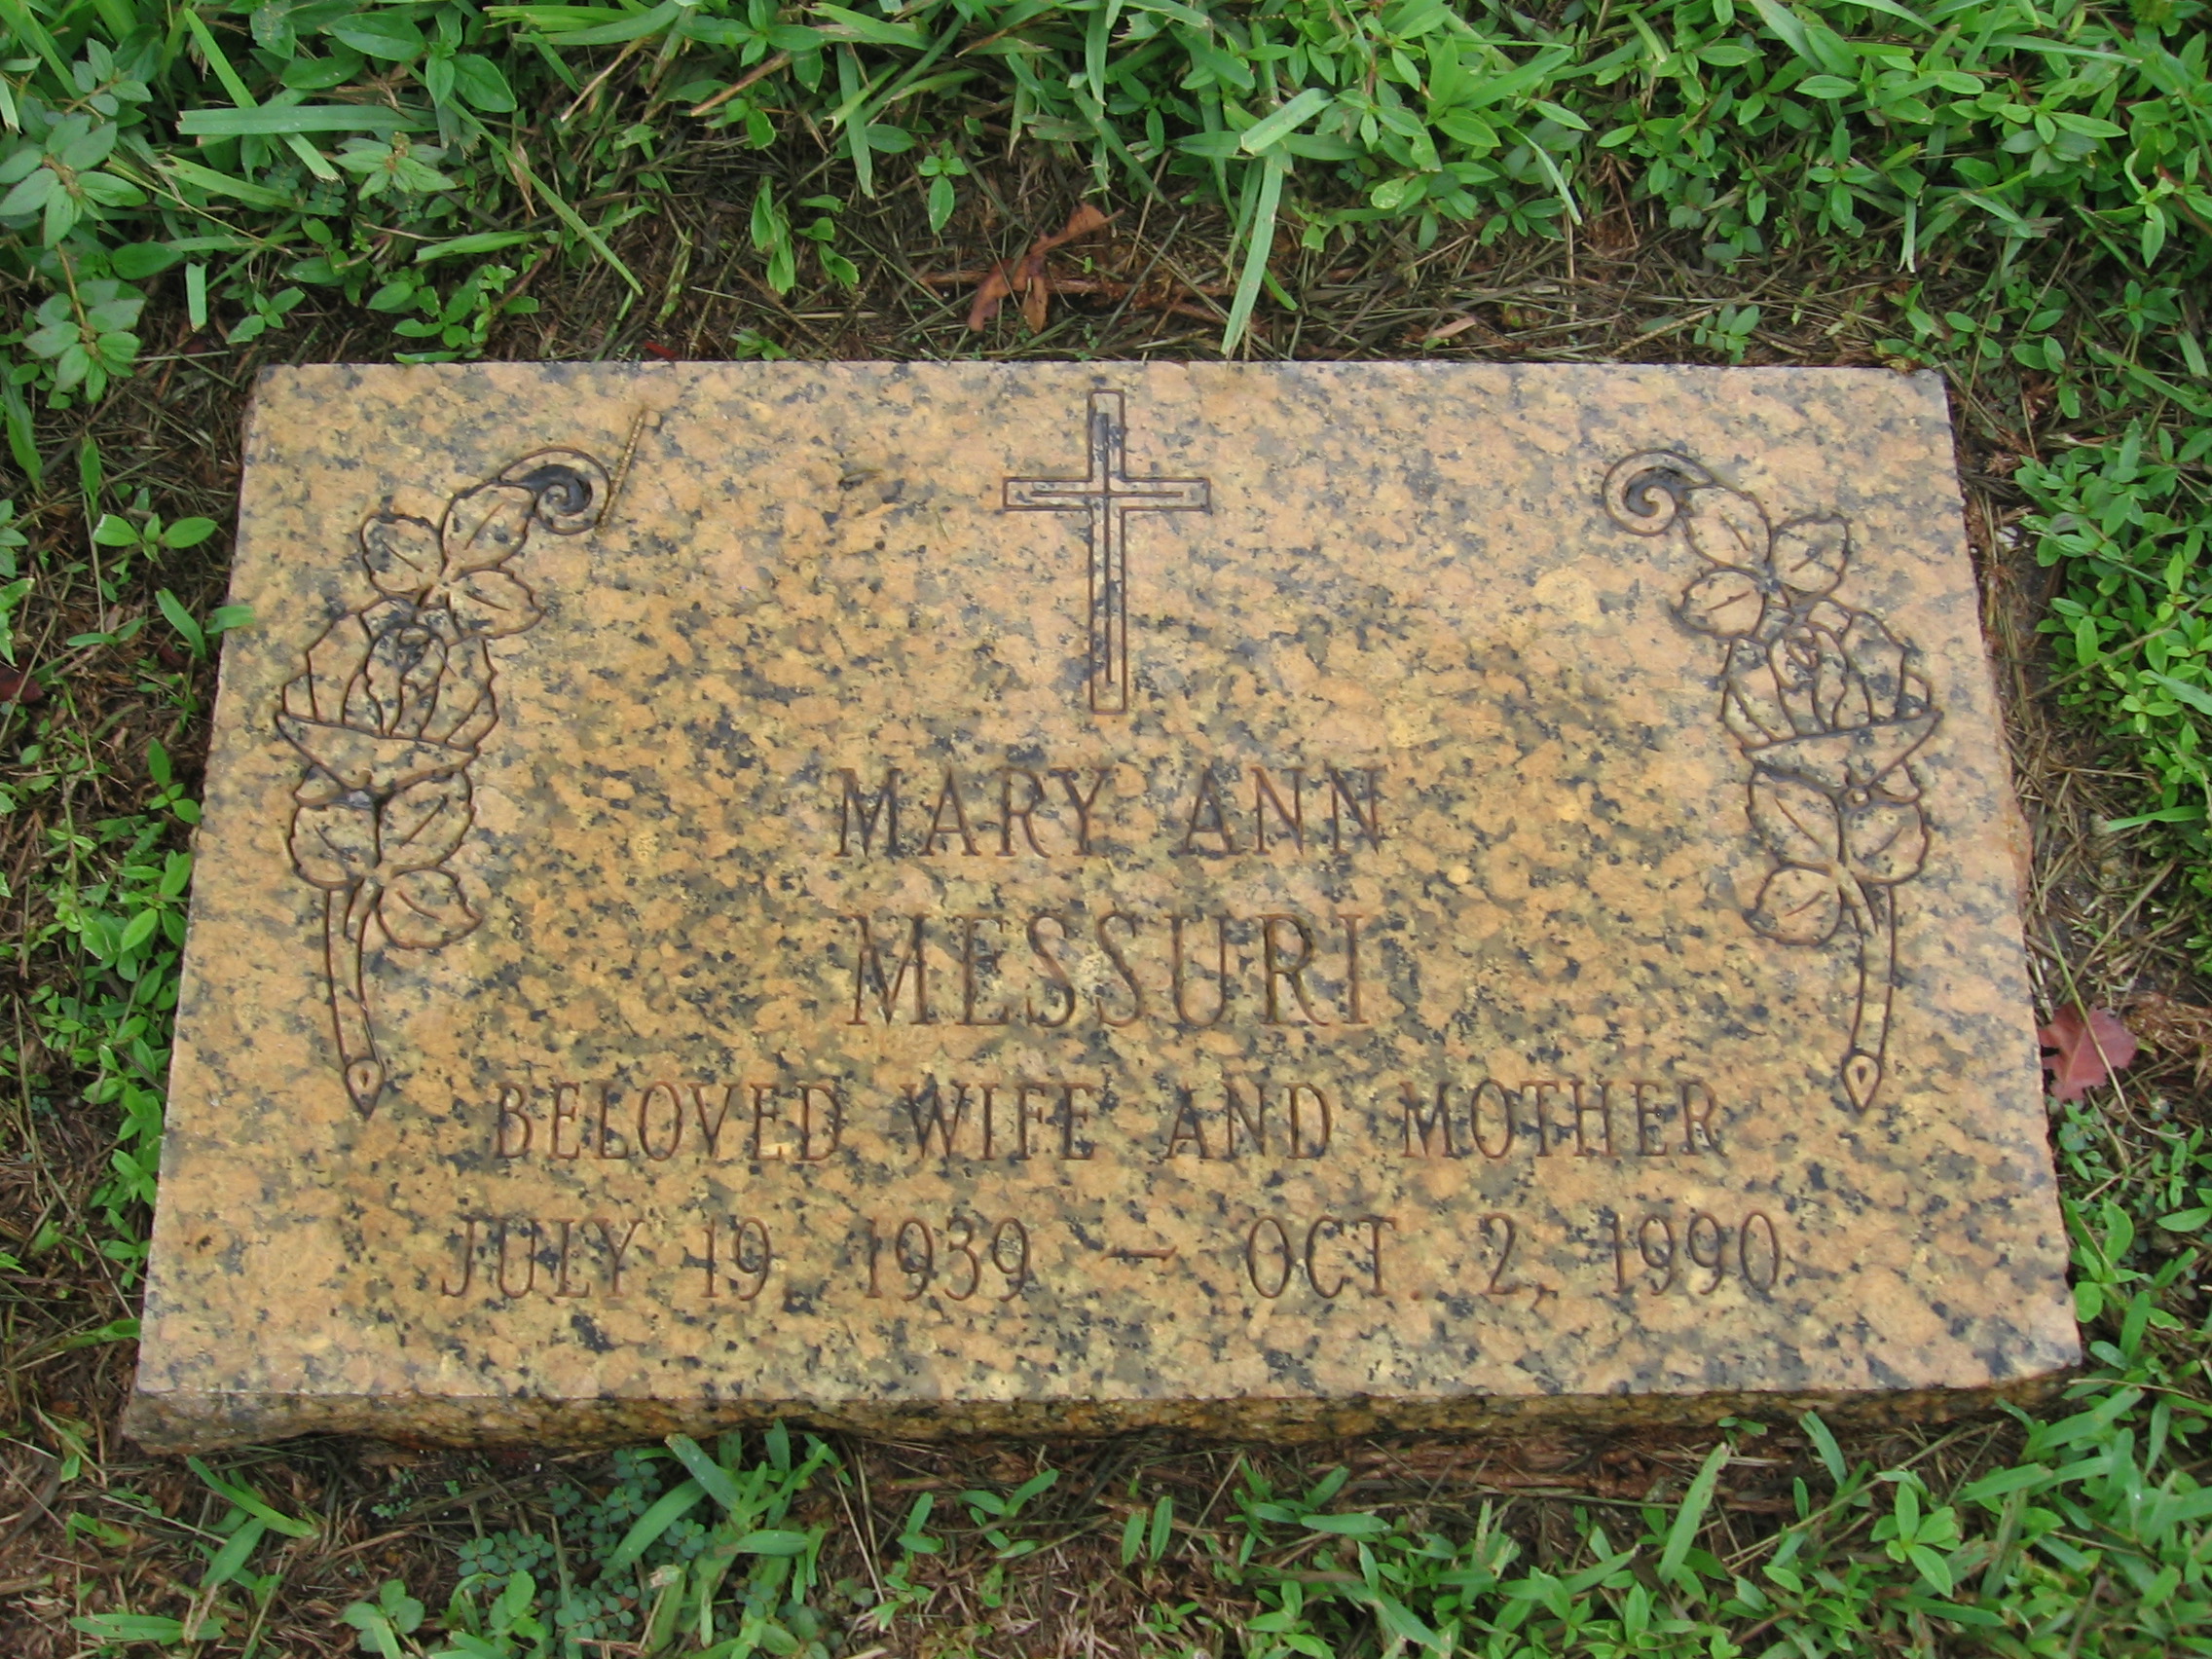 Mary Ann Messuri